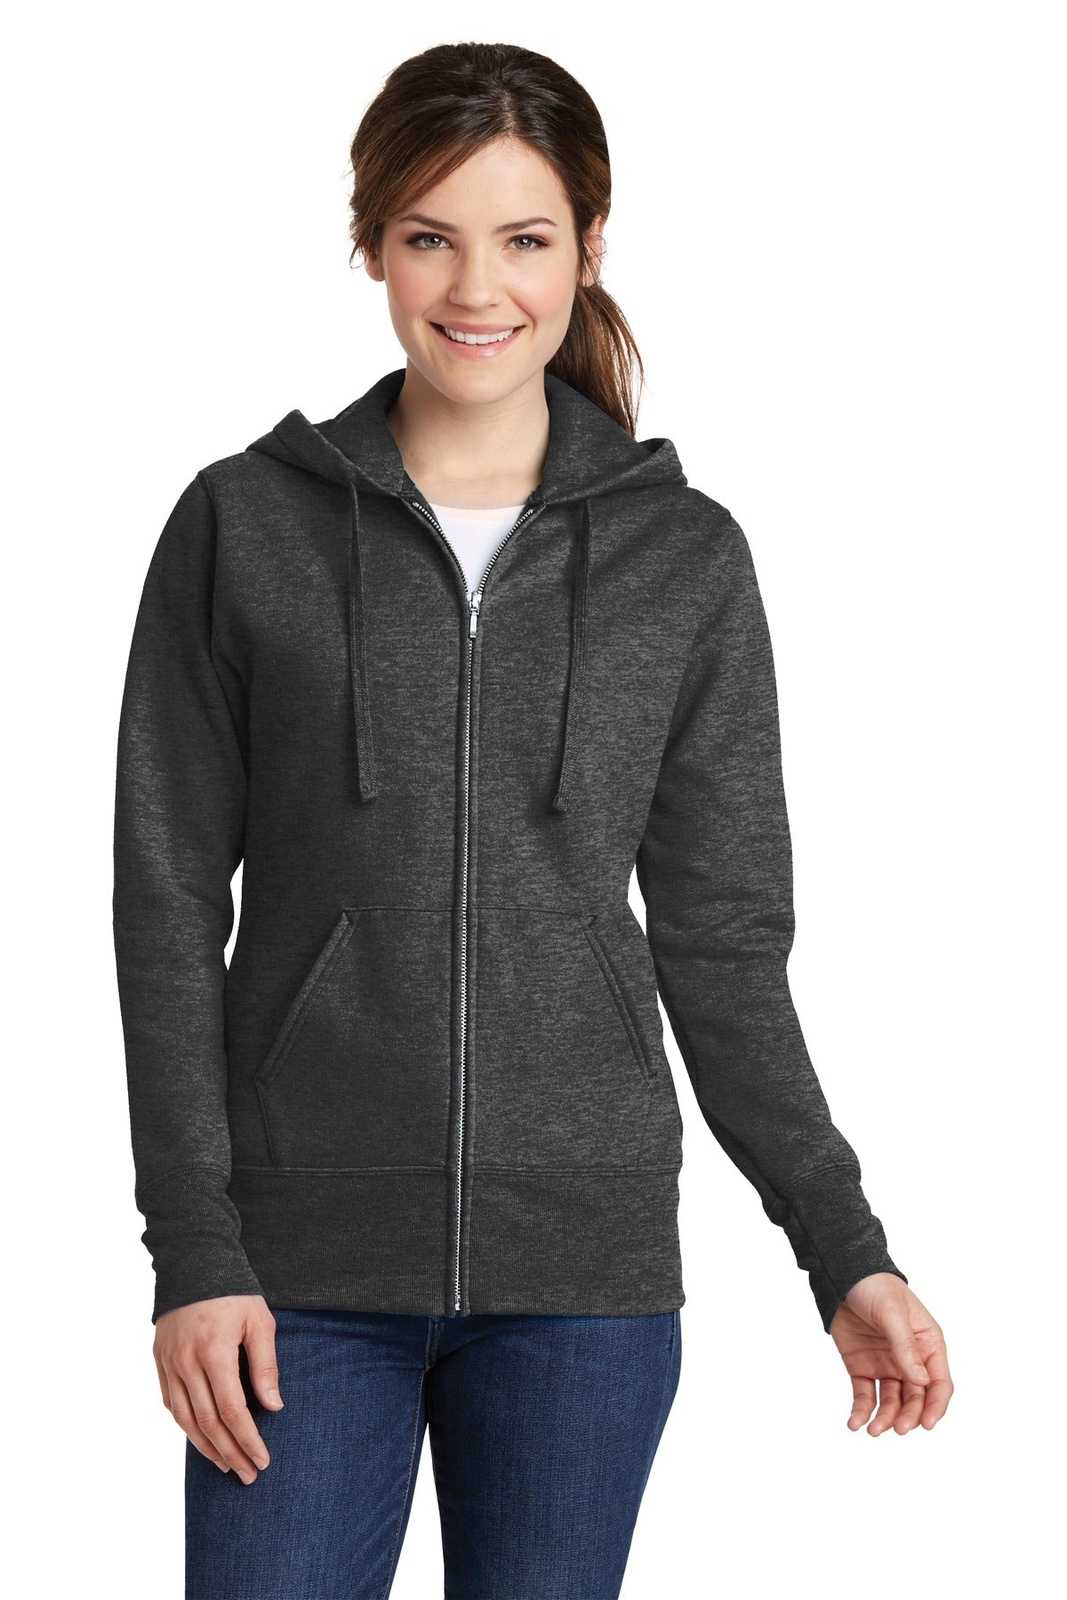 Port & Company LPC78ZH Ladies Core Fleece Full-Zip Hooded Sweatshirt - Dark Heather Gray - HIT a Double - 1